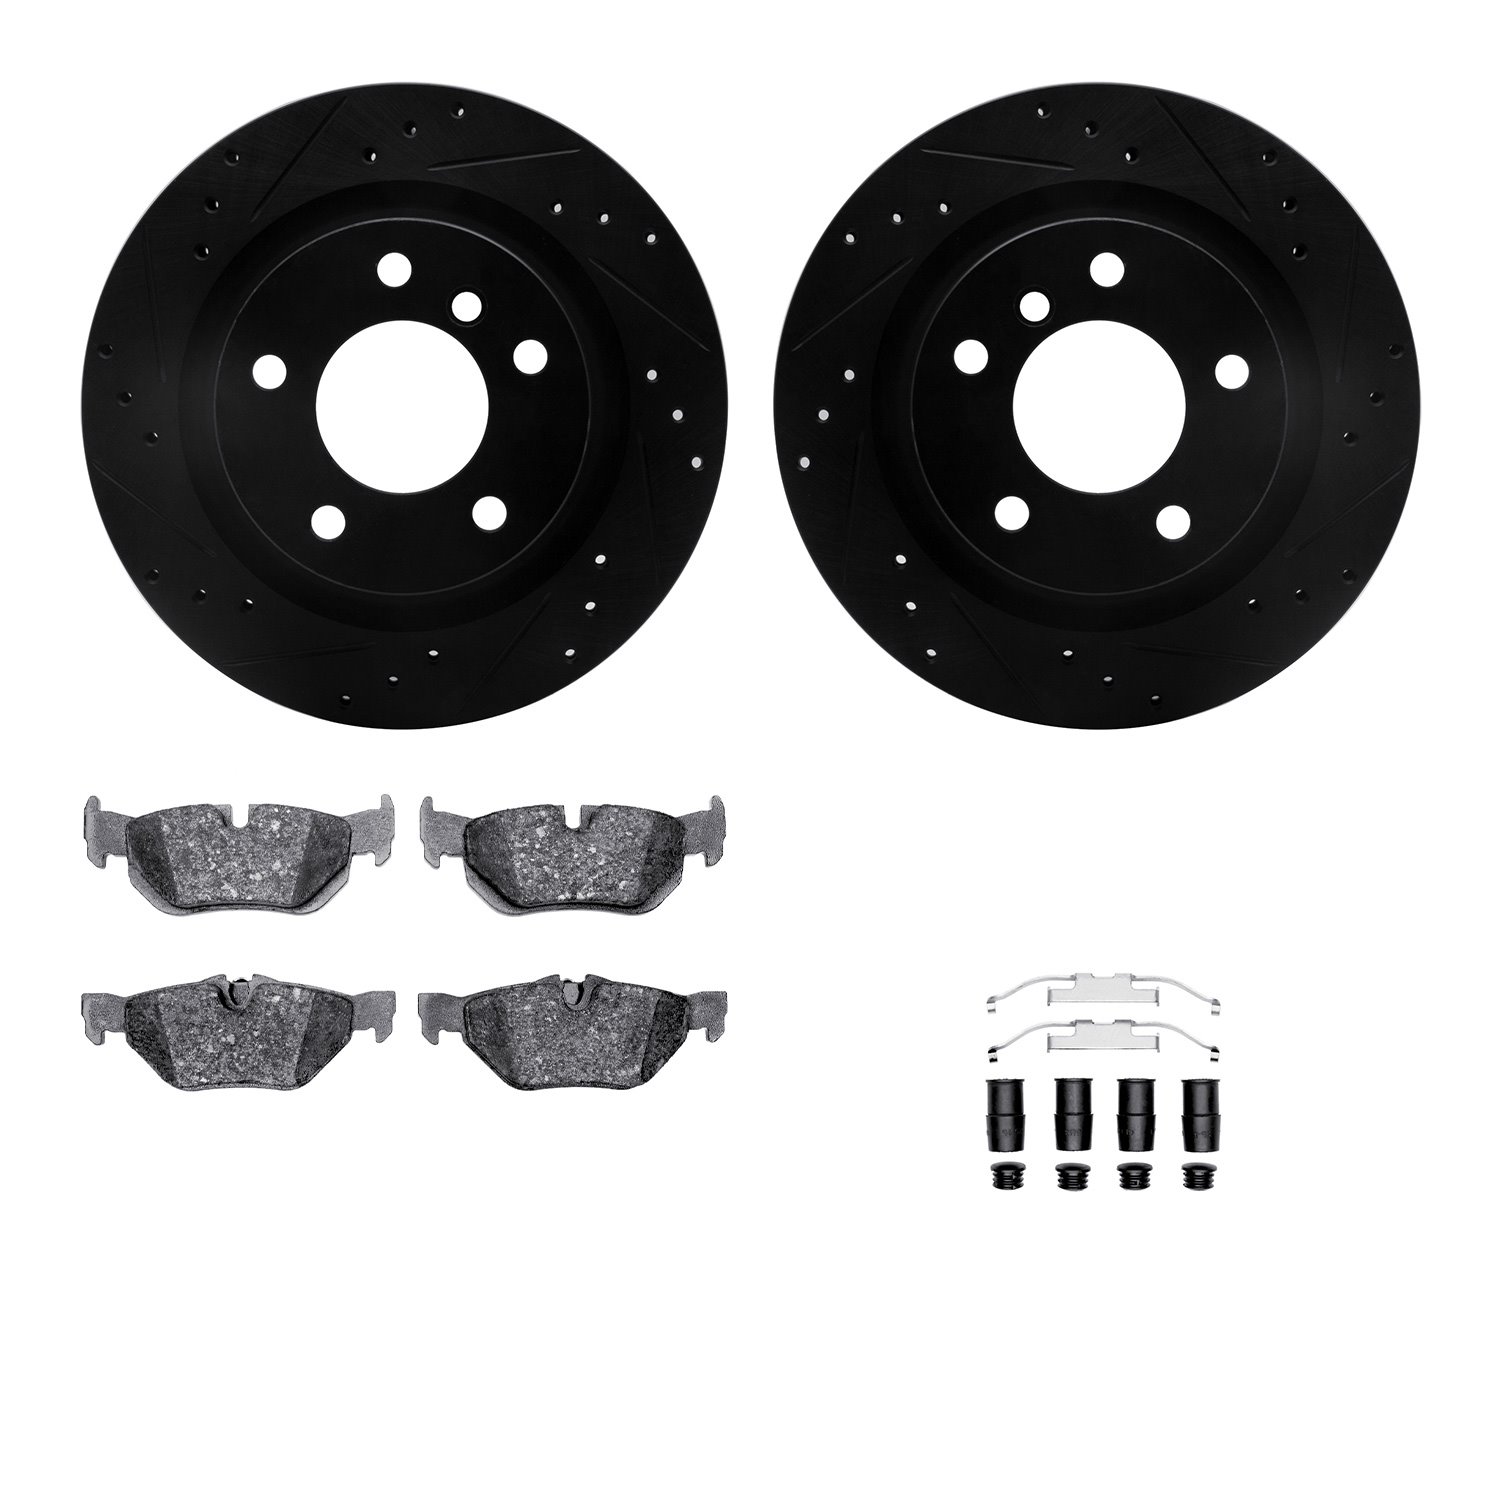 8612-31075 Drilled/Slotted Brake Rotors w/5000 Euro Ceramic Brake Pads Kit & Hardware [Black], 2008-2013 BMW, Position: Rear